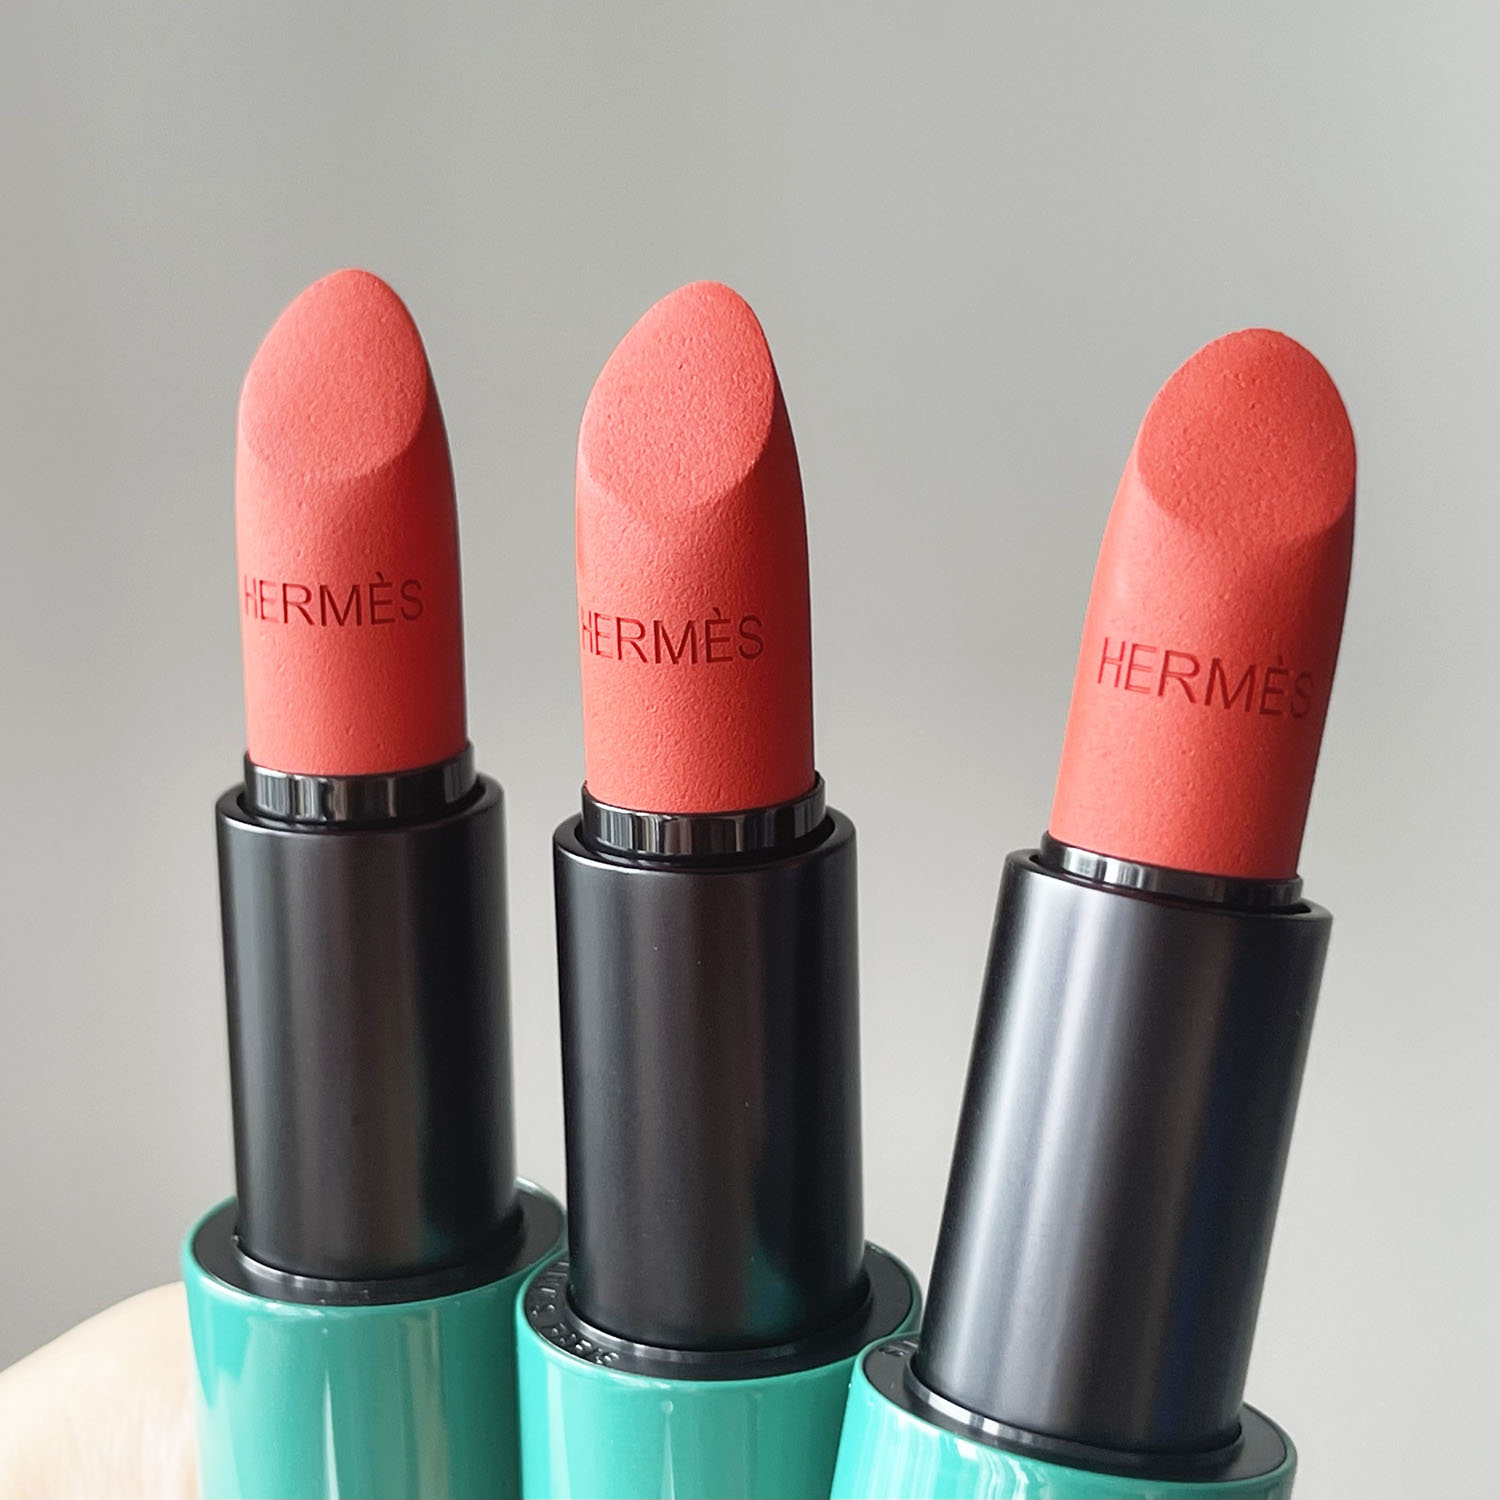 Hermes 71 Son Lì Matte Edition Orange Brule Lipstick Màu Cam Đất